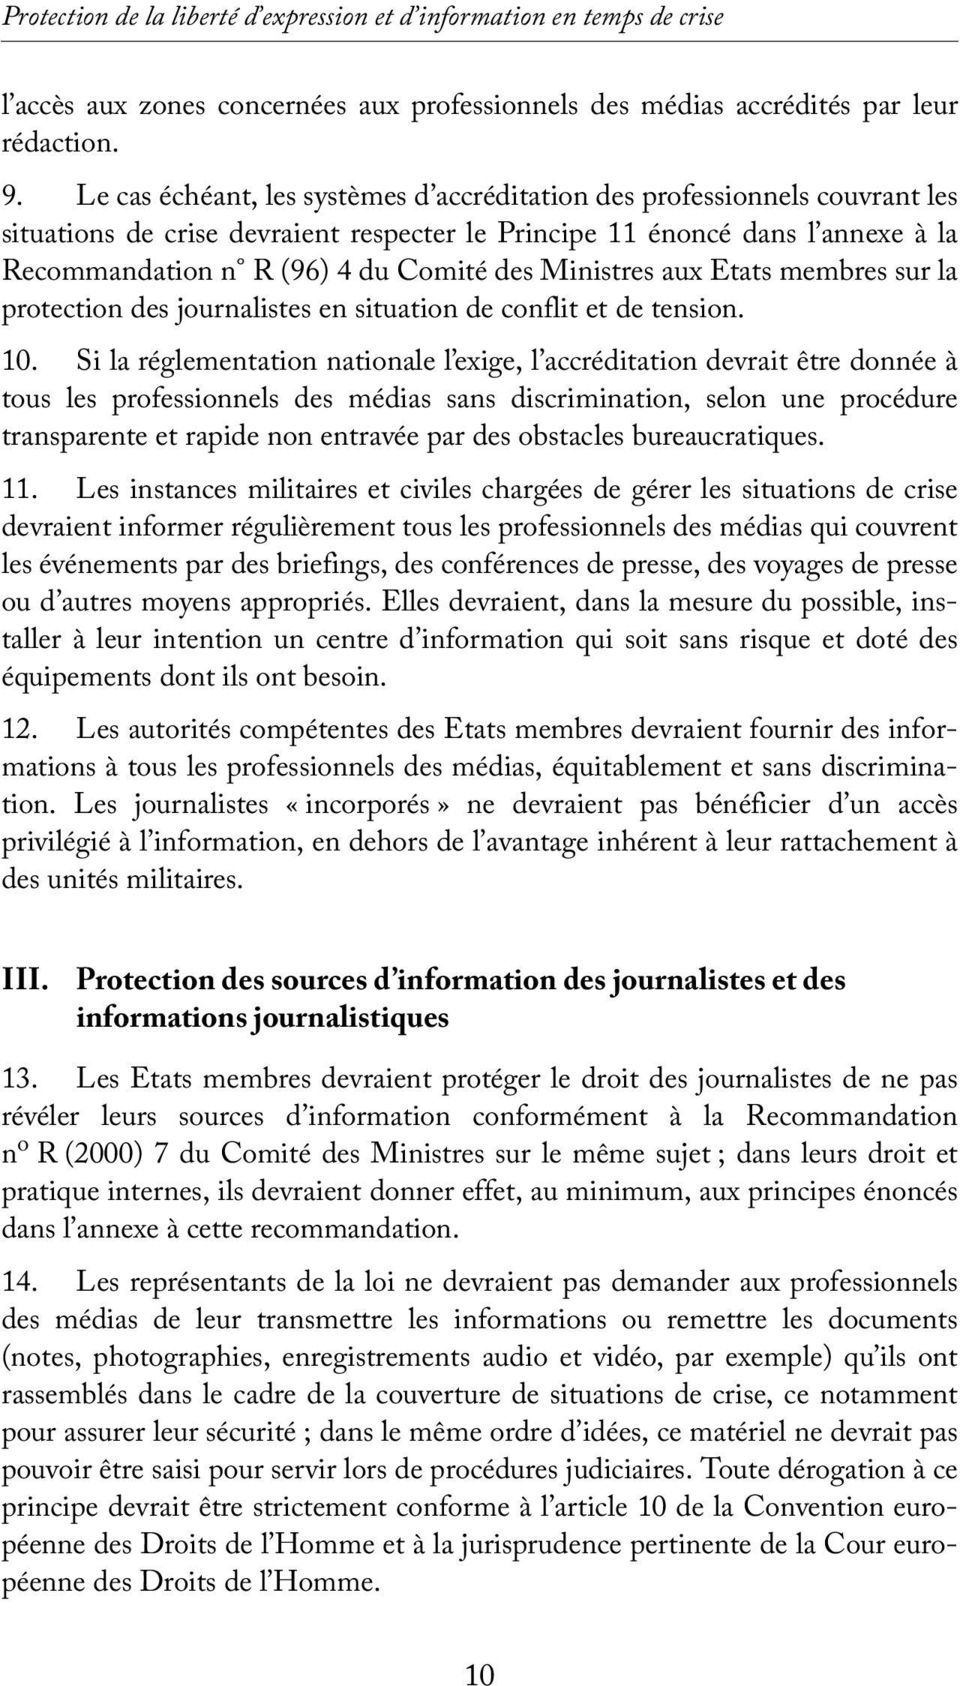 Ministres aux Etats membres sur la protection des journalistes en situation de conflit et de tension. 10.